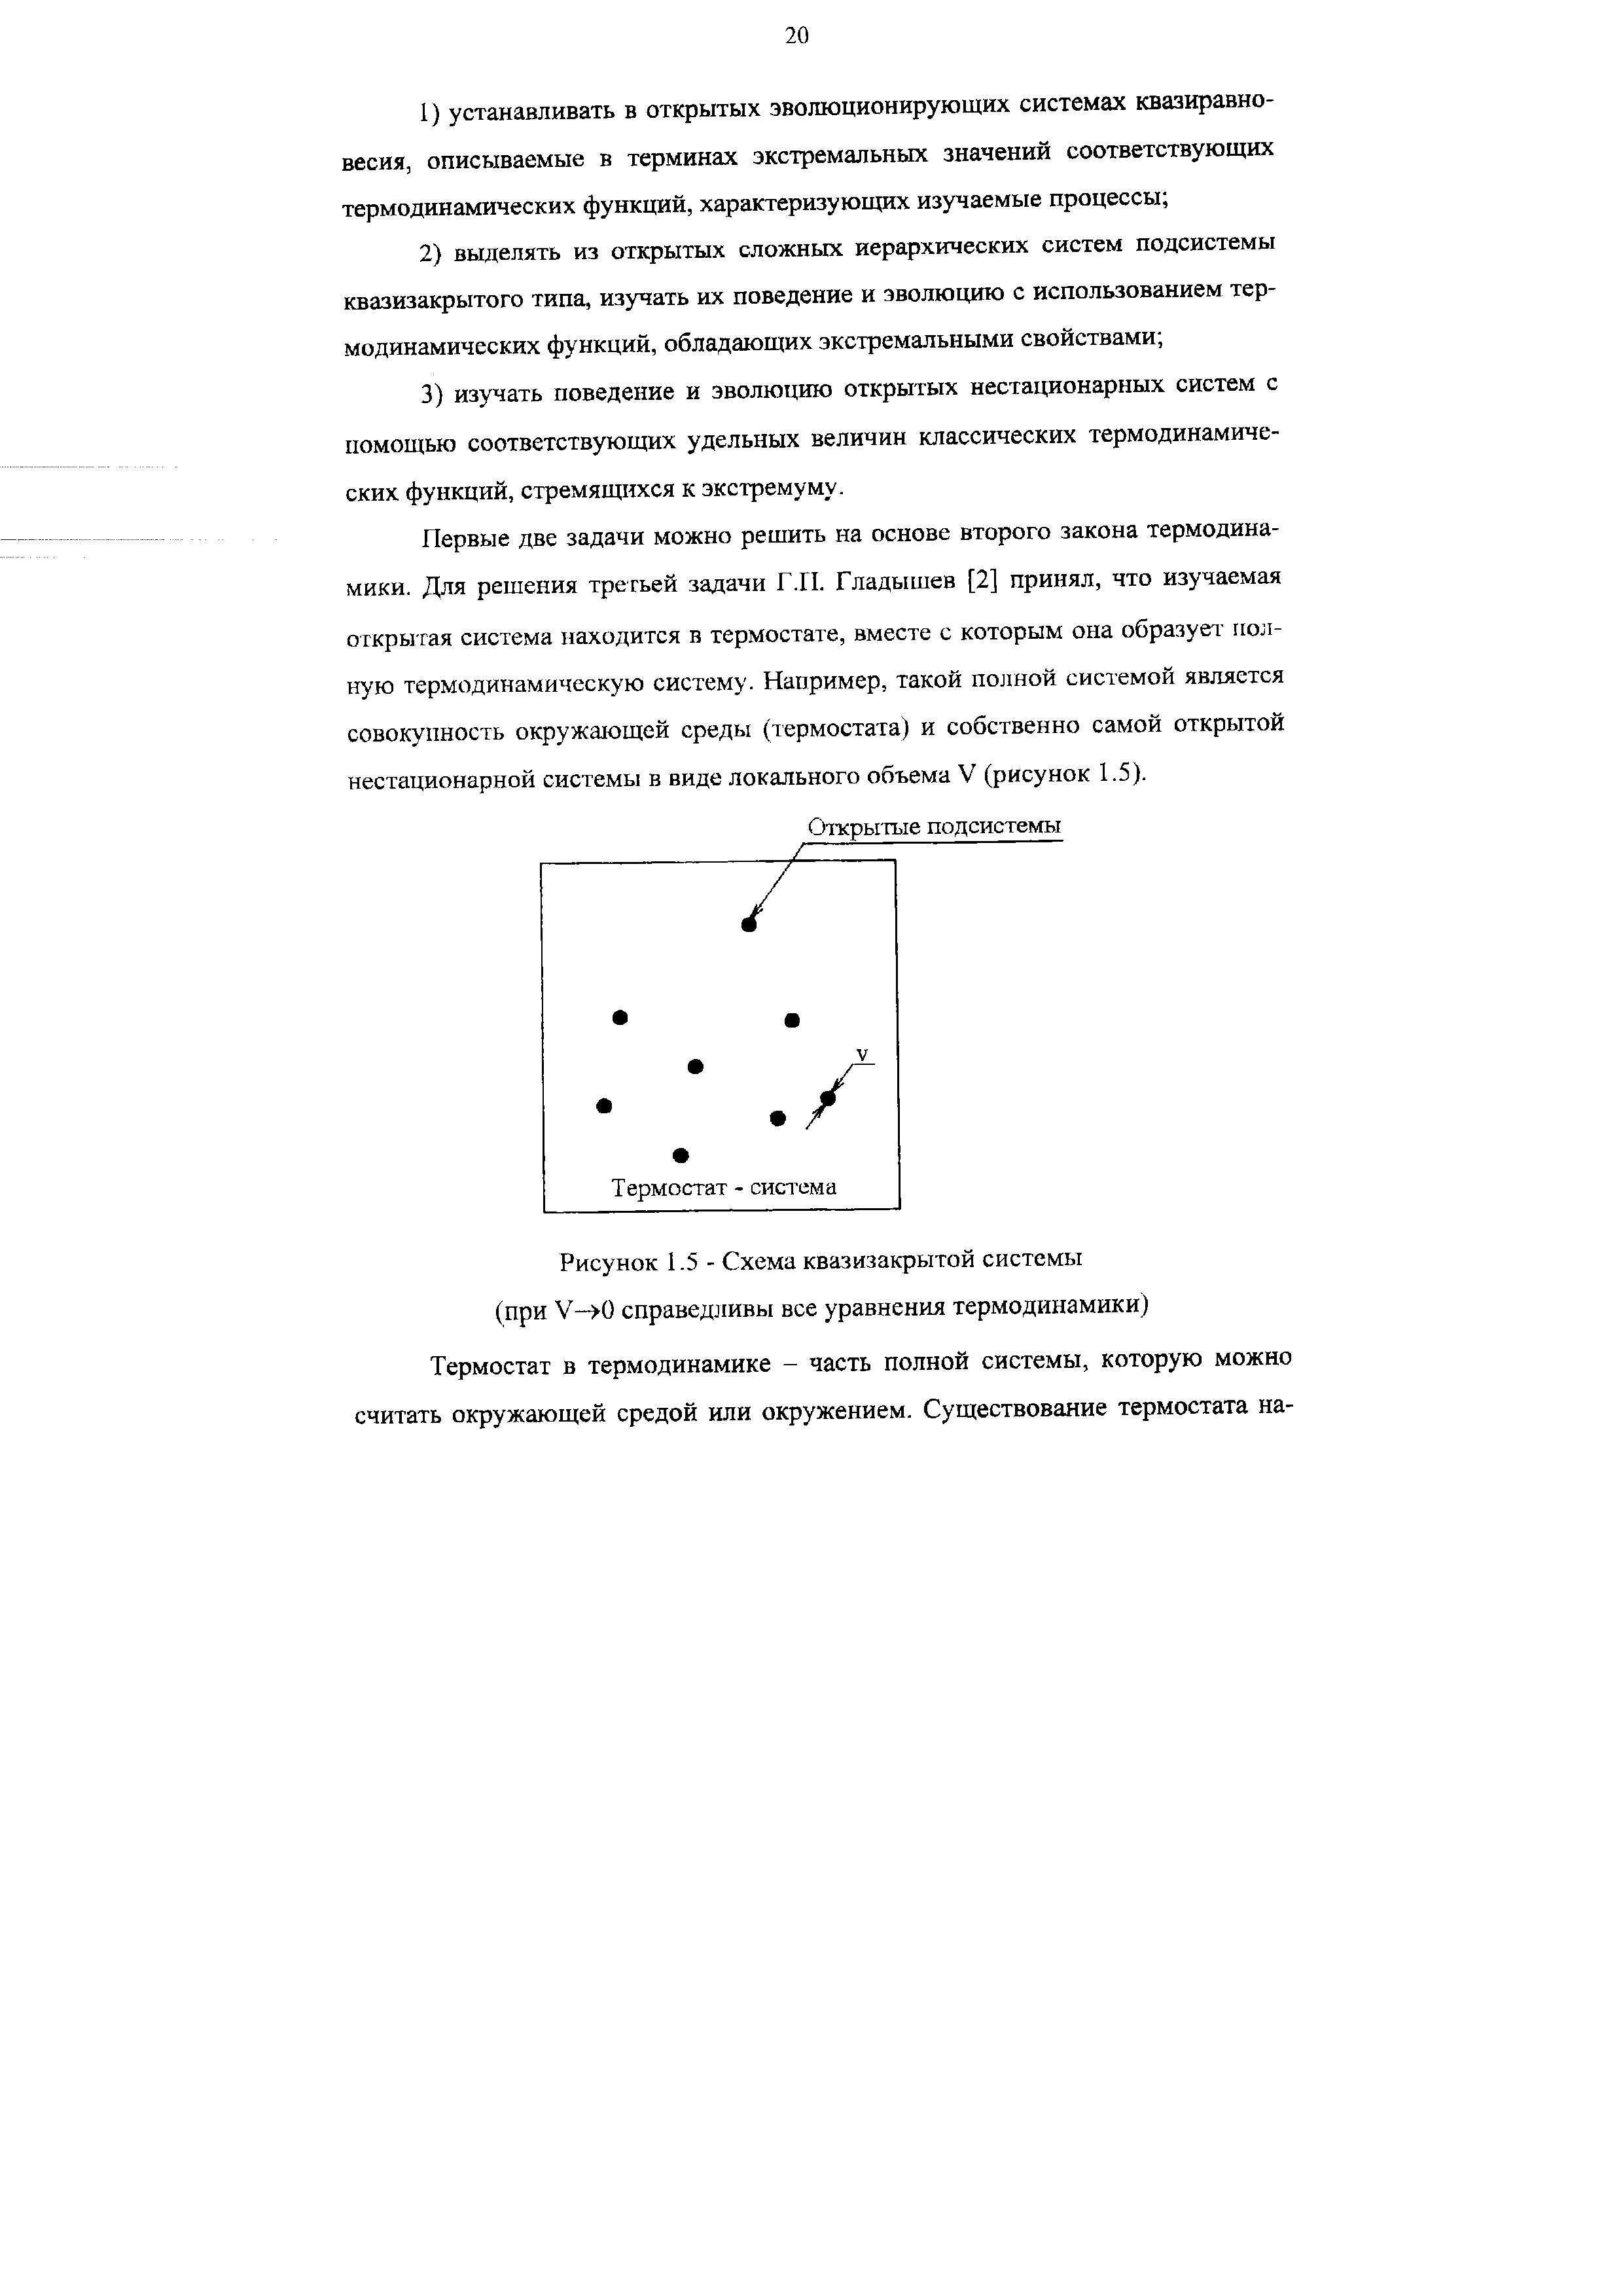 Рисунок 1.5 - Схема квазизакрытой системы (при V—>0 справедливы все уравнения термодинамики)
